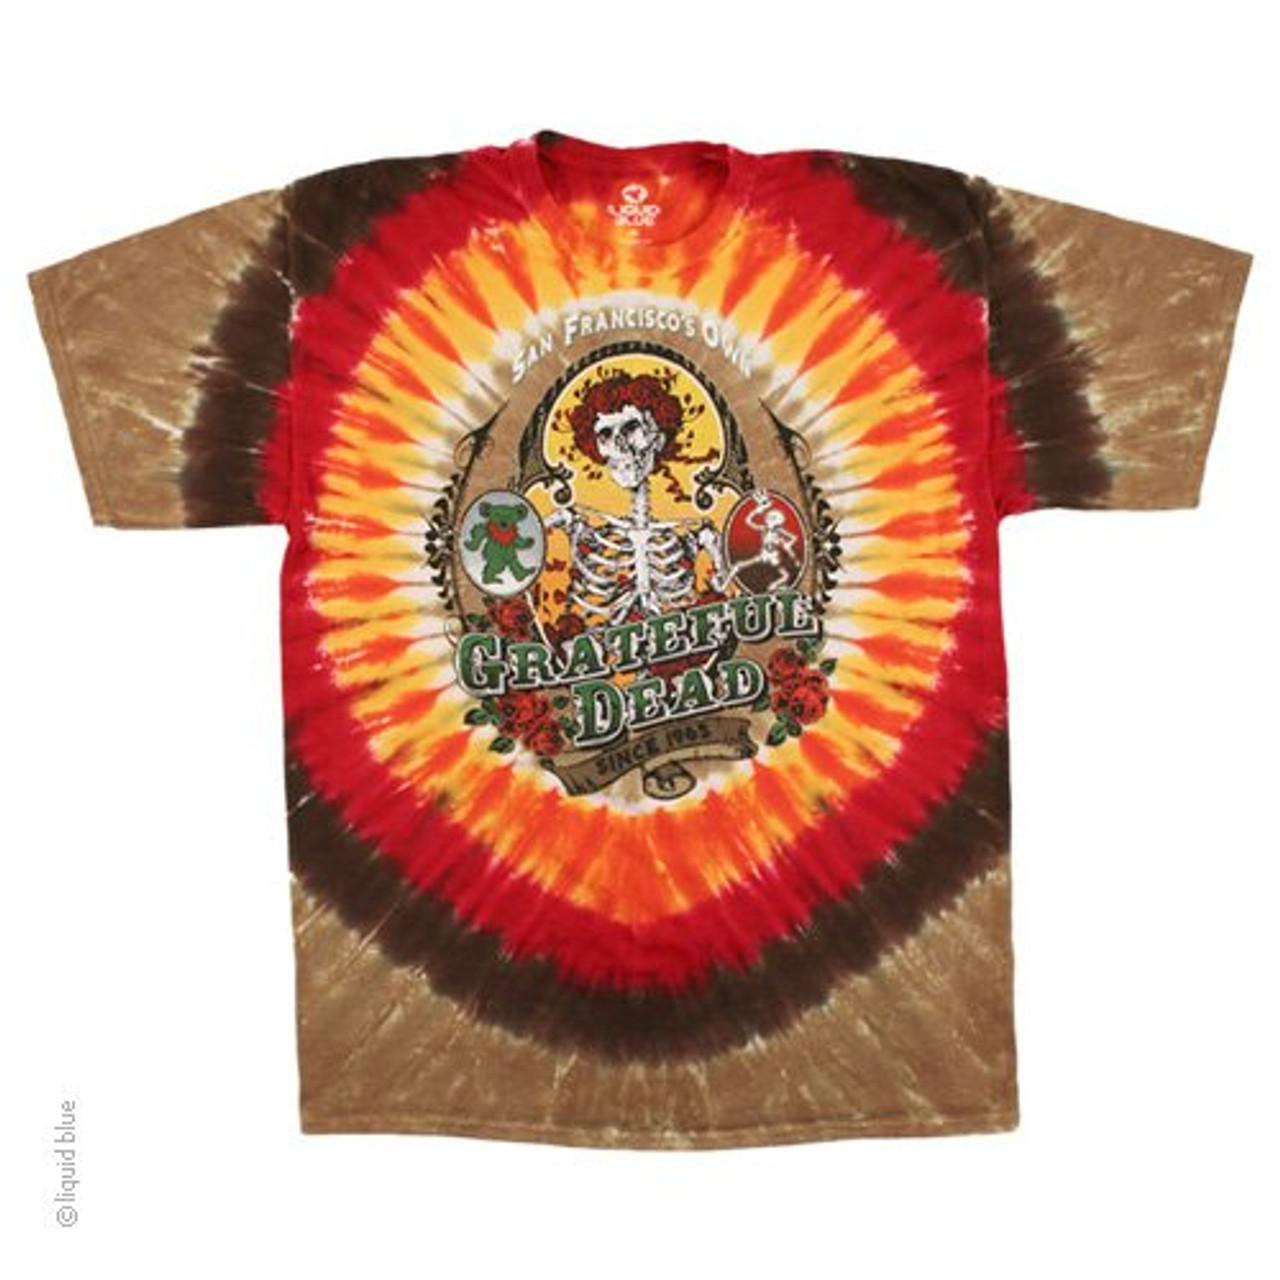 Grateful Dead T-Shirt - Ithaca New York